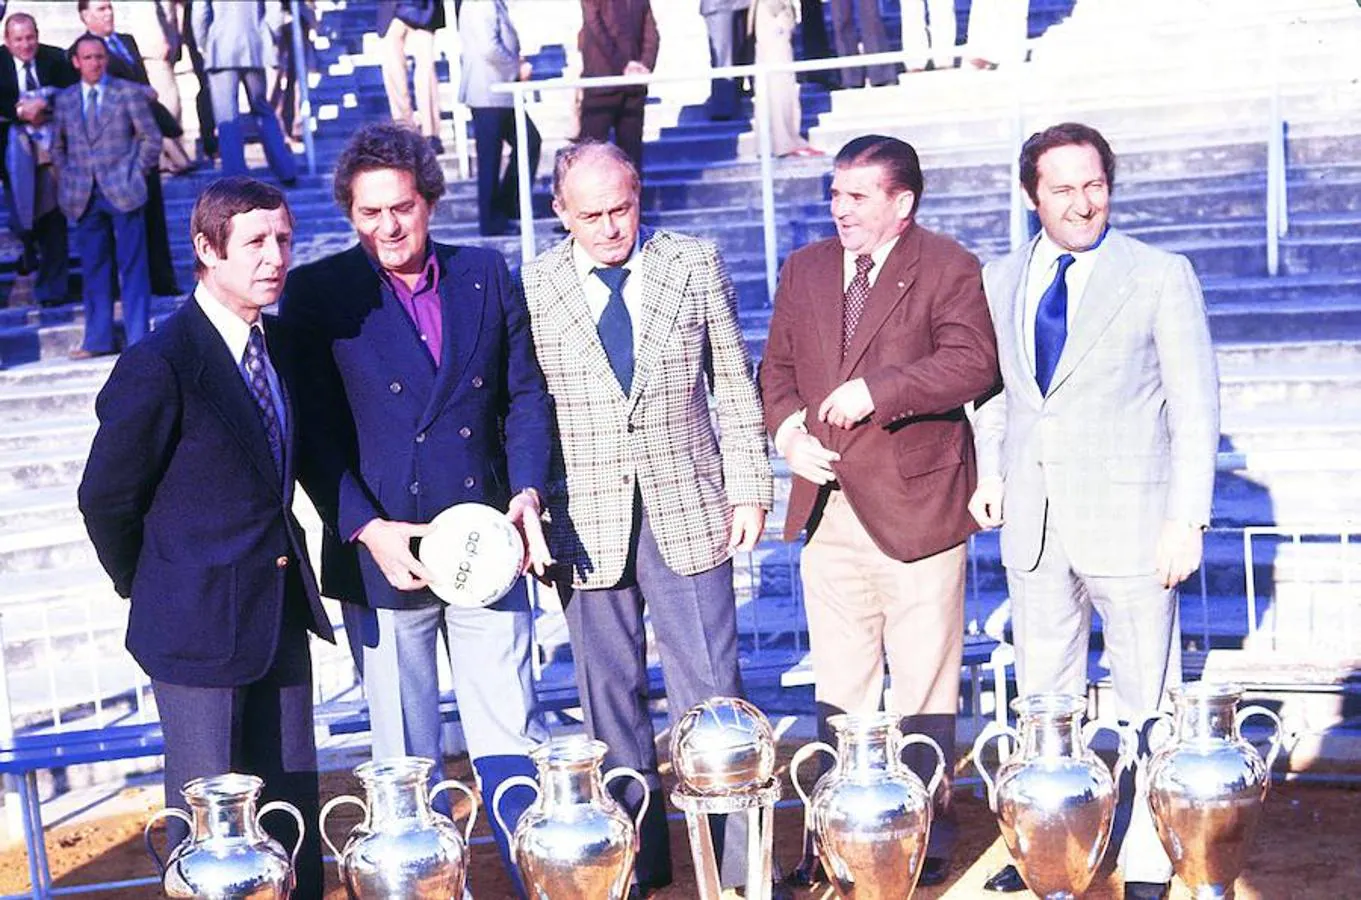 Los delanteros más famosos del Real Madrid posan con las Copas de Europa y la Intercontinental. Los delanteros son, de izquierda a derecha, Kopa, Rial, Di Stefano, Puskas y Gento en el 75 aniversario del club blanco